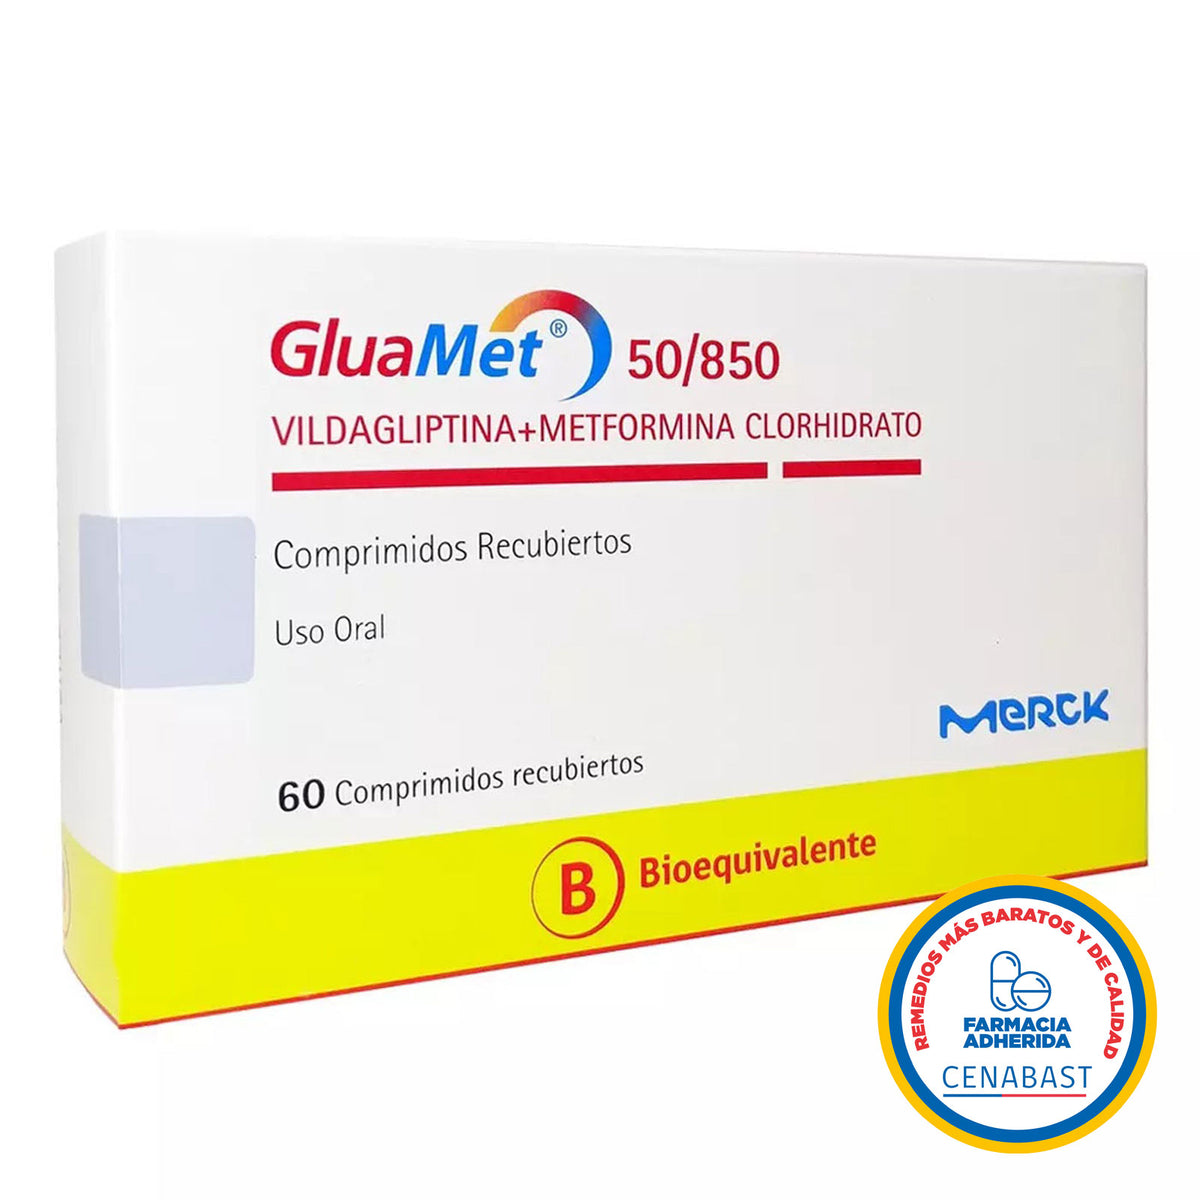 Gluamet Comprimidos Recubiertos 50/850 Producto Cenabast